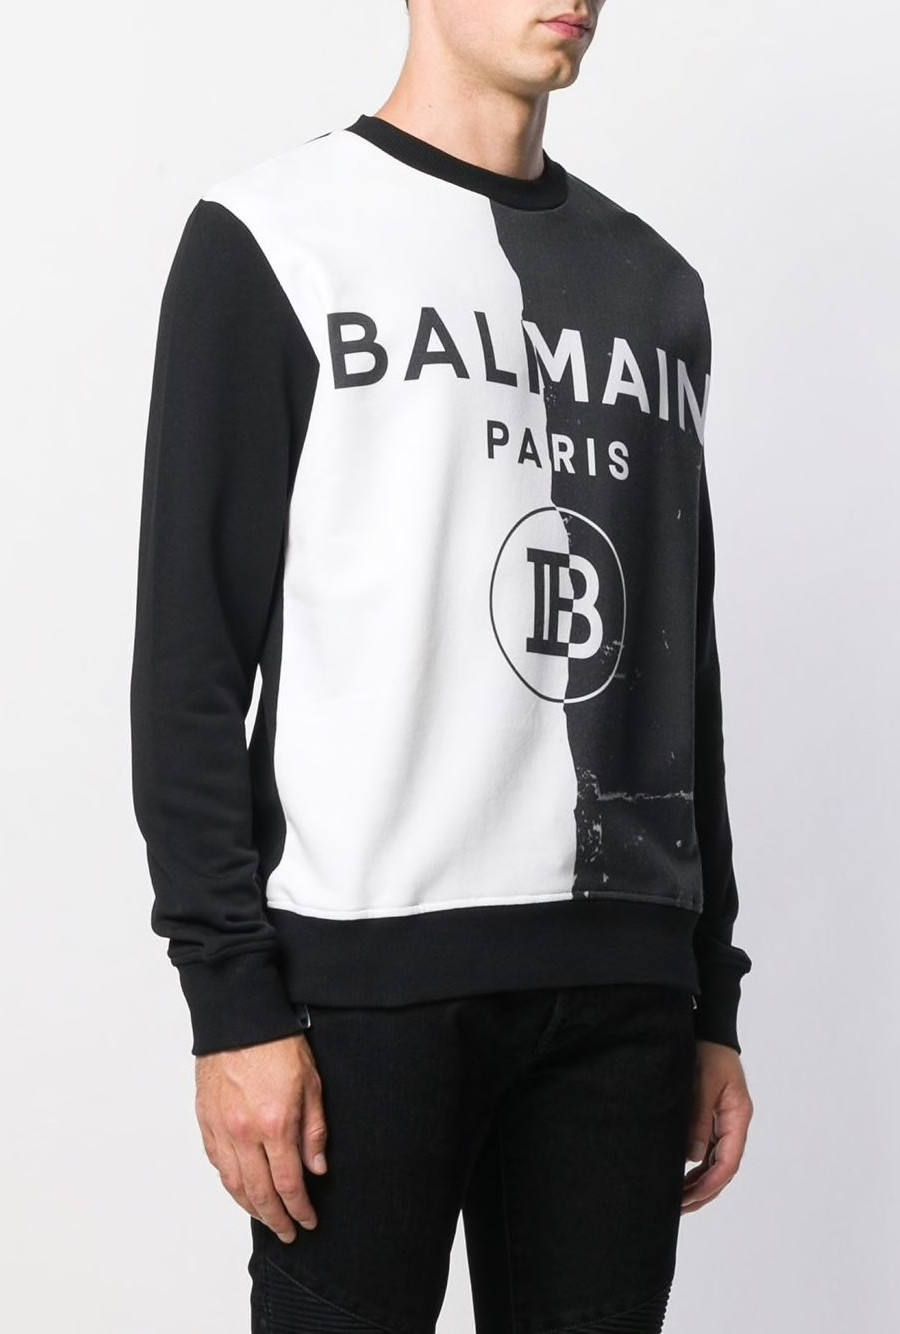 BALMAIN - Bロゴ モノクロハーフプリント スウェットシャツ - BLACK